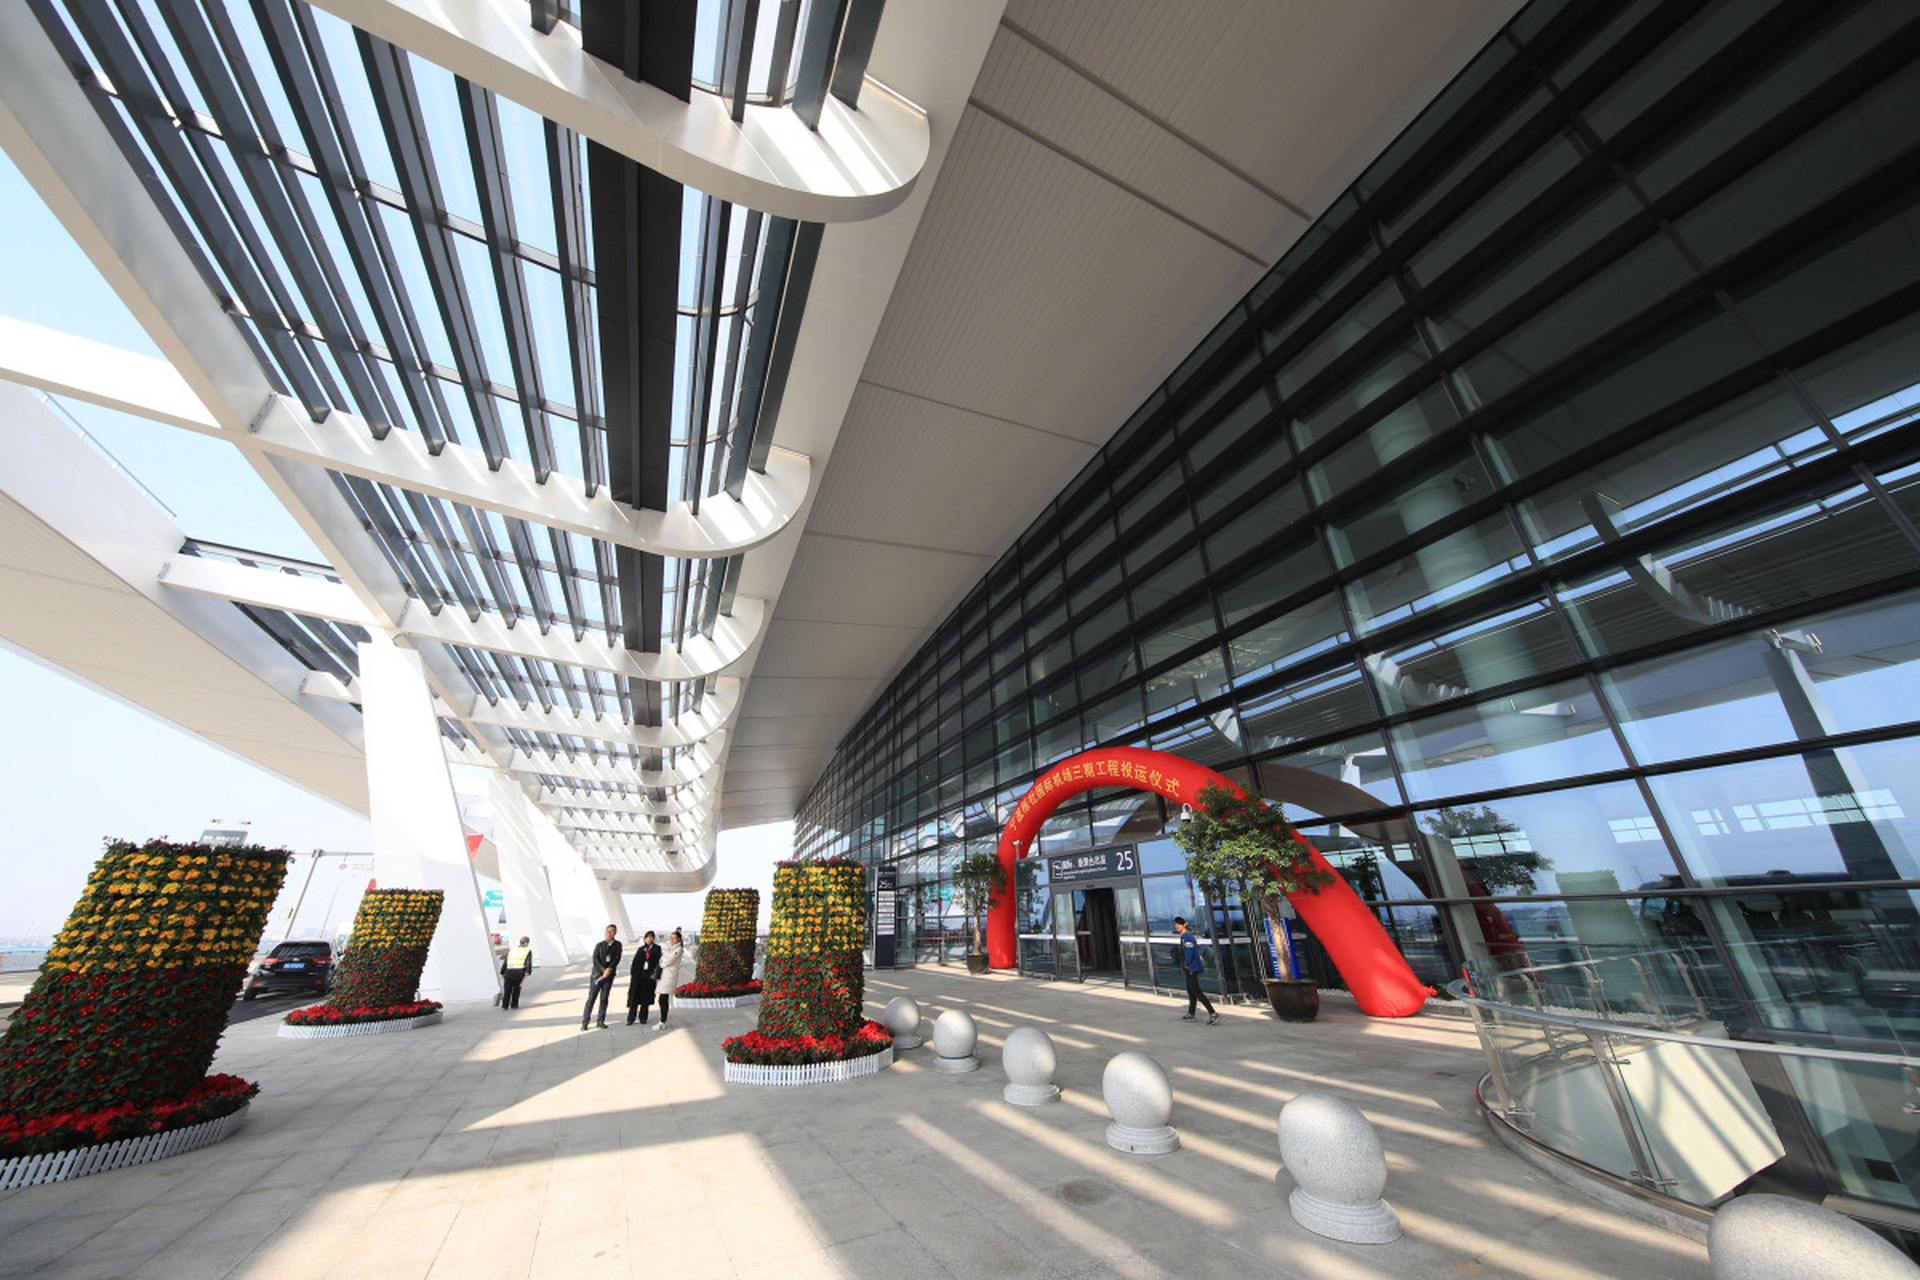 宁波机场跑道偏出引发航班取消  在8月7日,宁波栎社国际机场发生了一